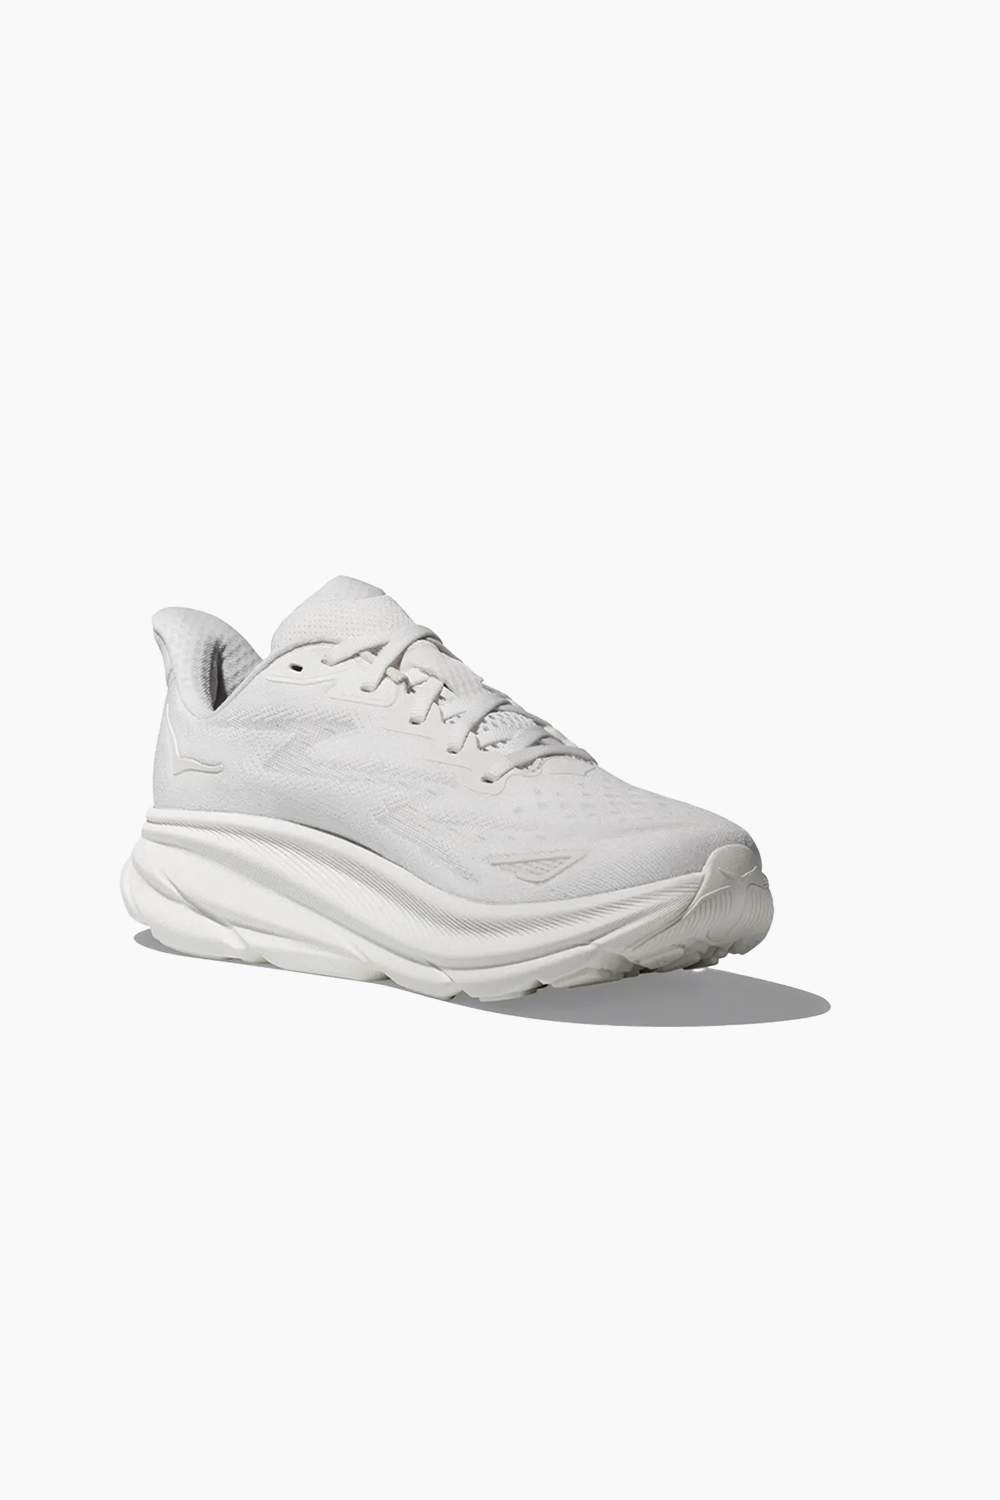 Hoka Men's Clifton 9 Sneaker in White/White